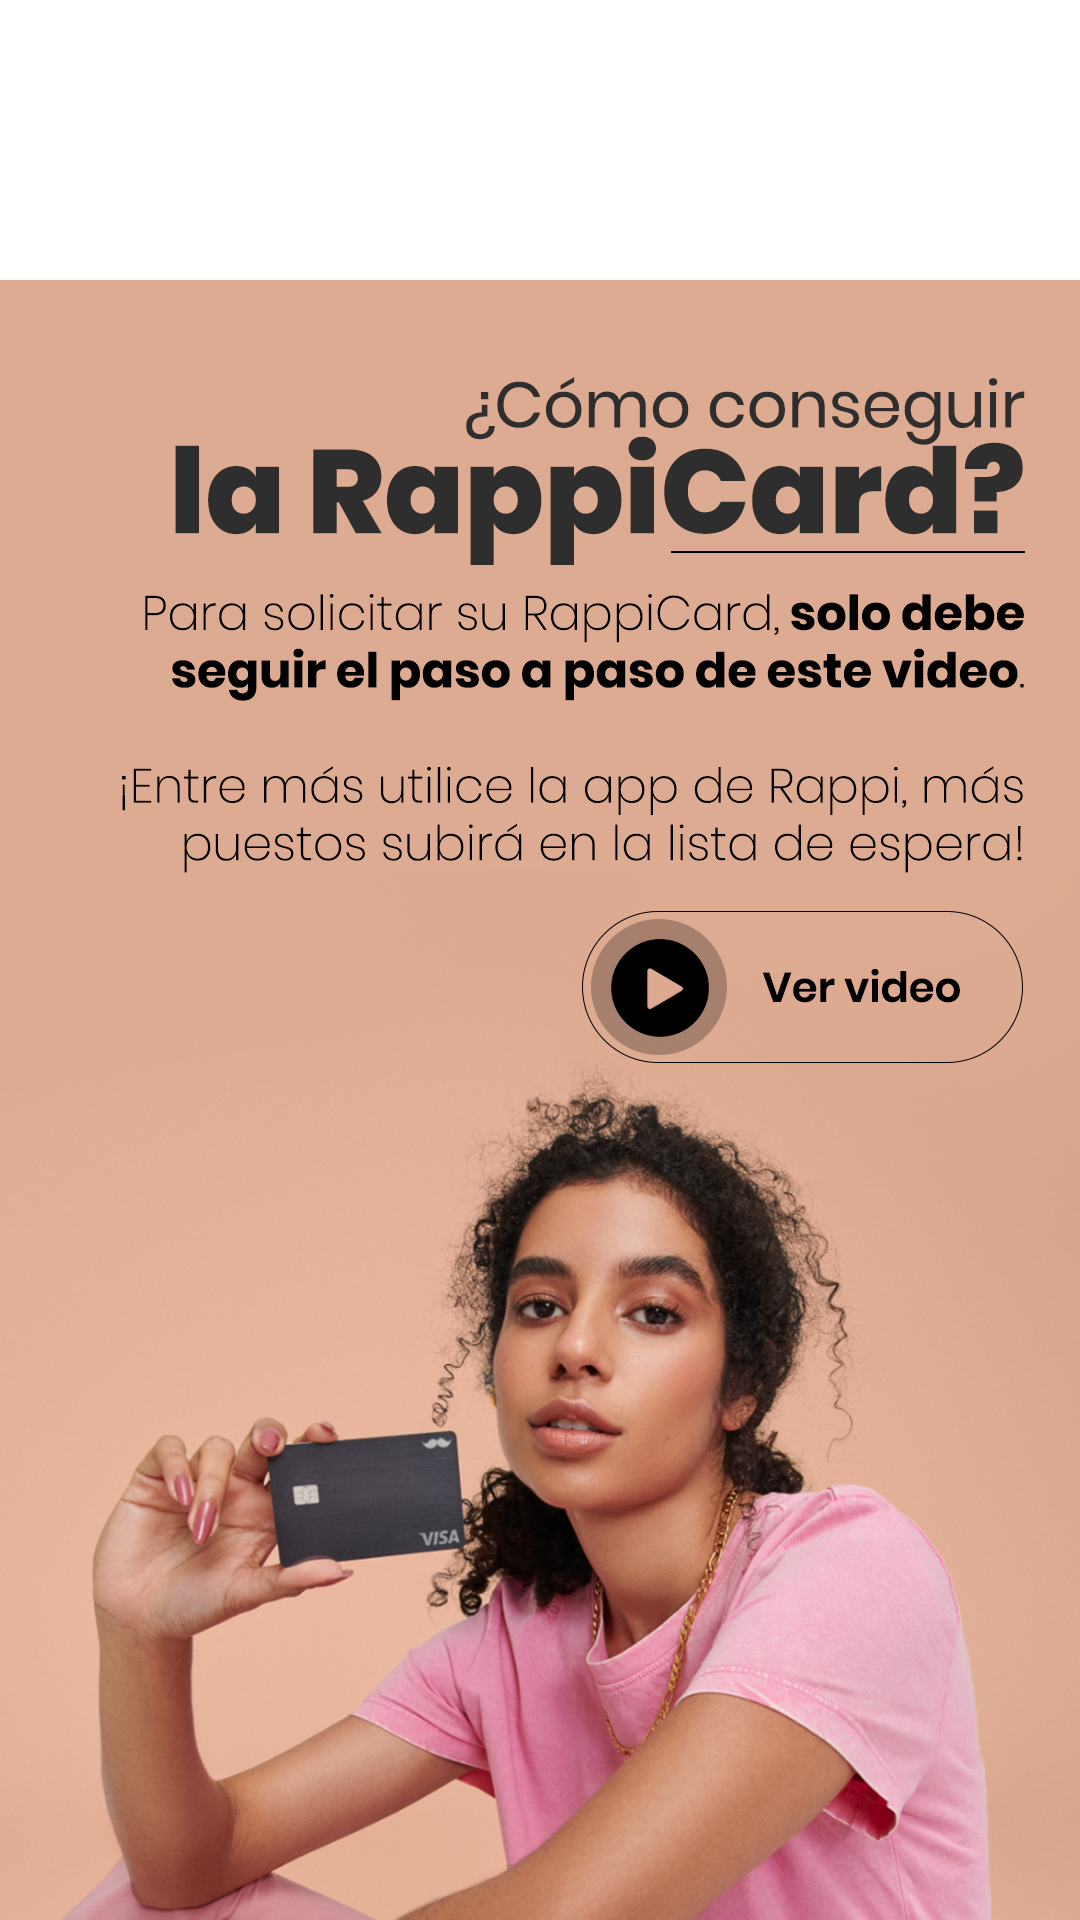 RappiCard y Visa le desean una ¡Feliz NaviCash!